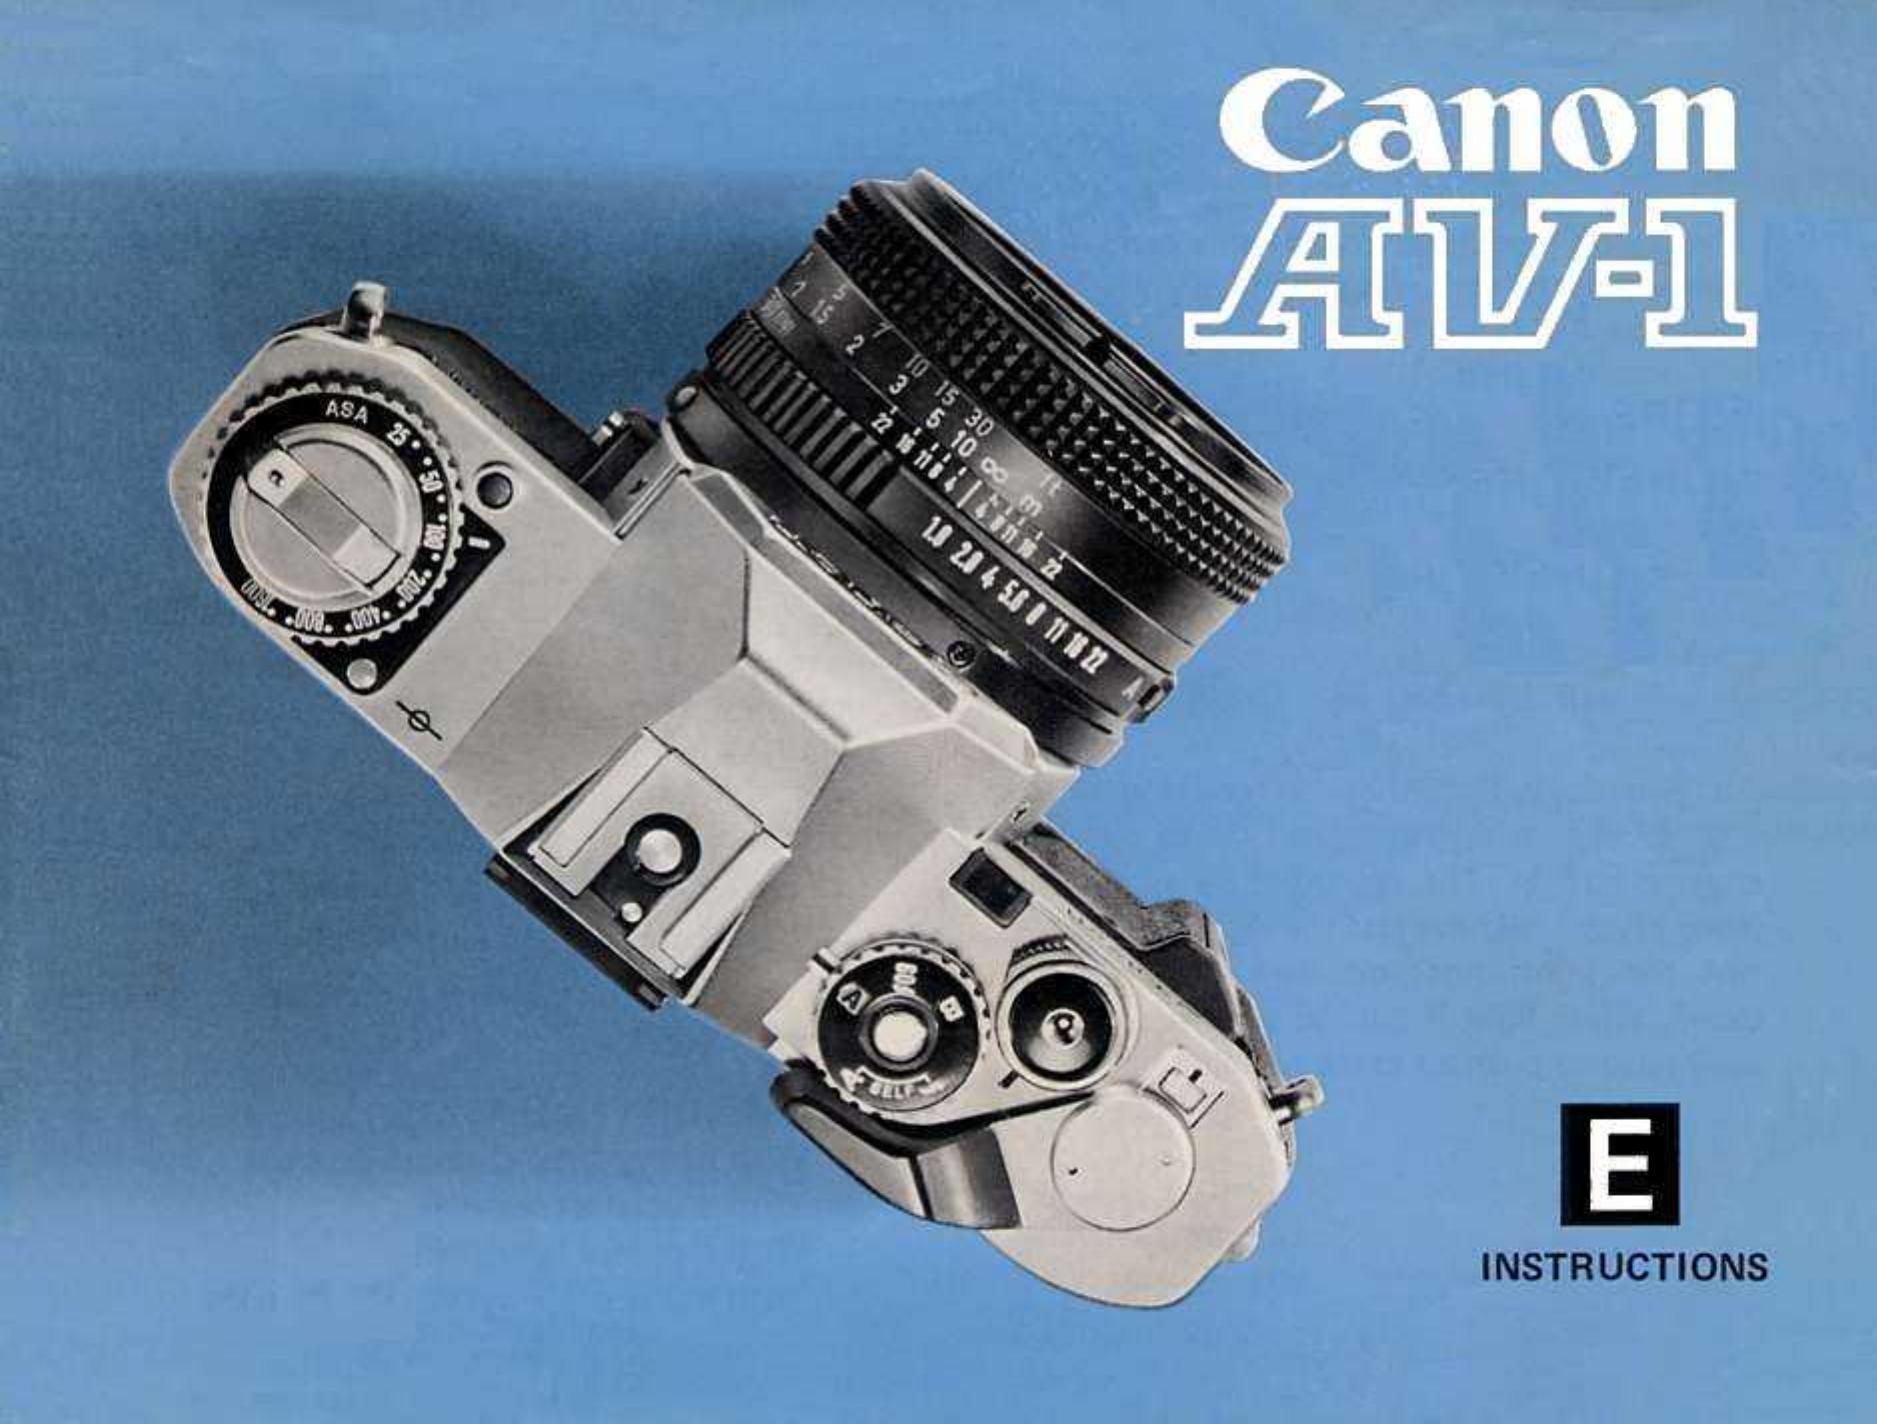 Canon AV1 Film Camera User Manual